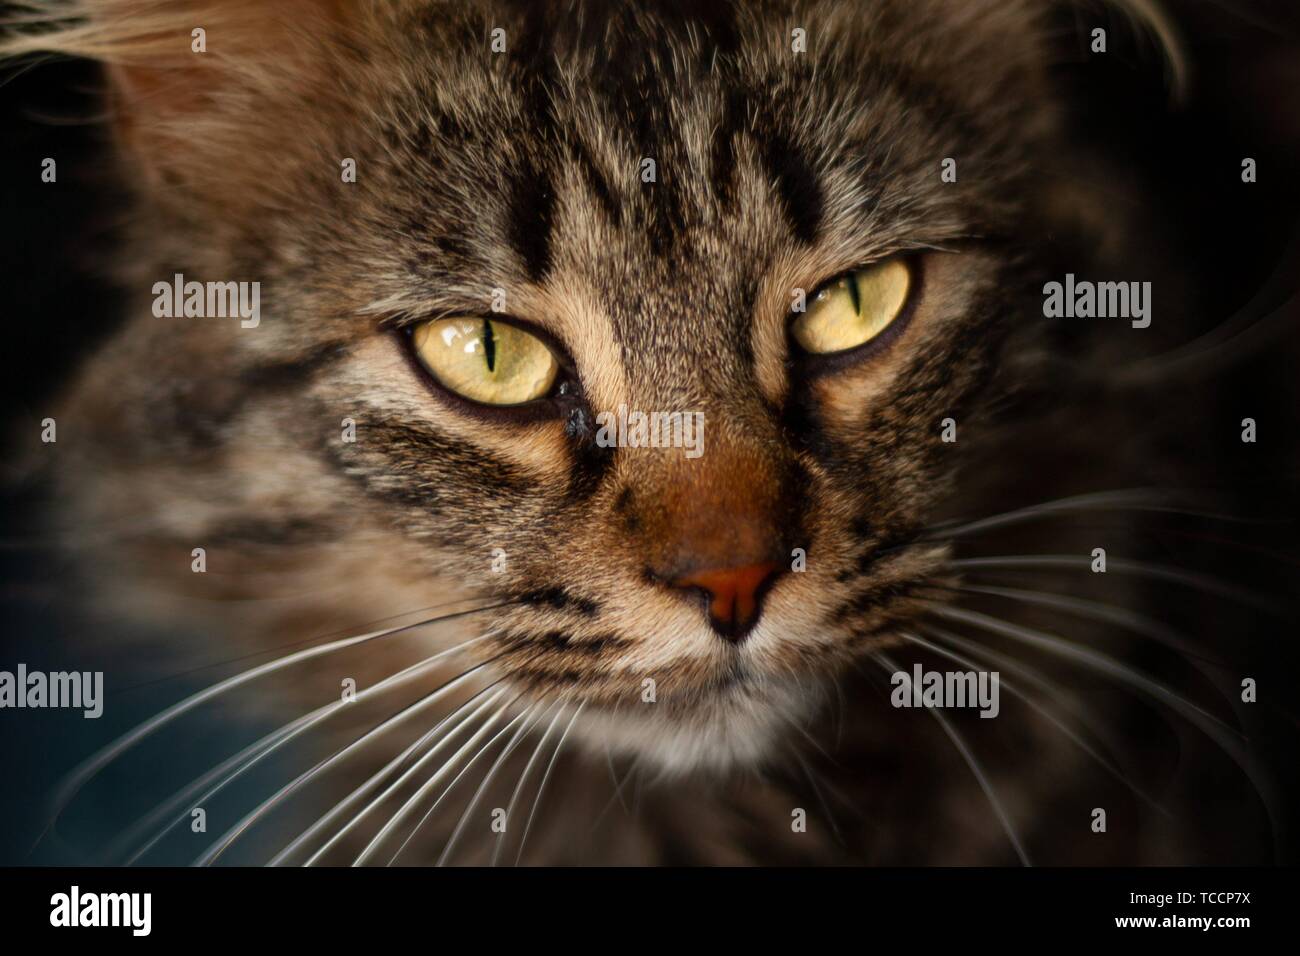 Détails d'un chat domestique avec de beaux yeux couleur ambre Banque D'Images